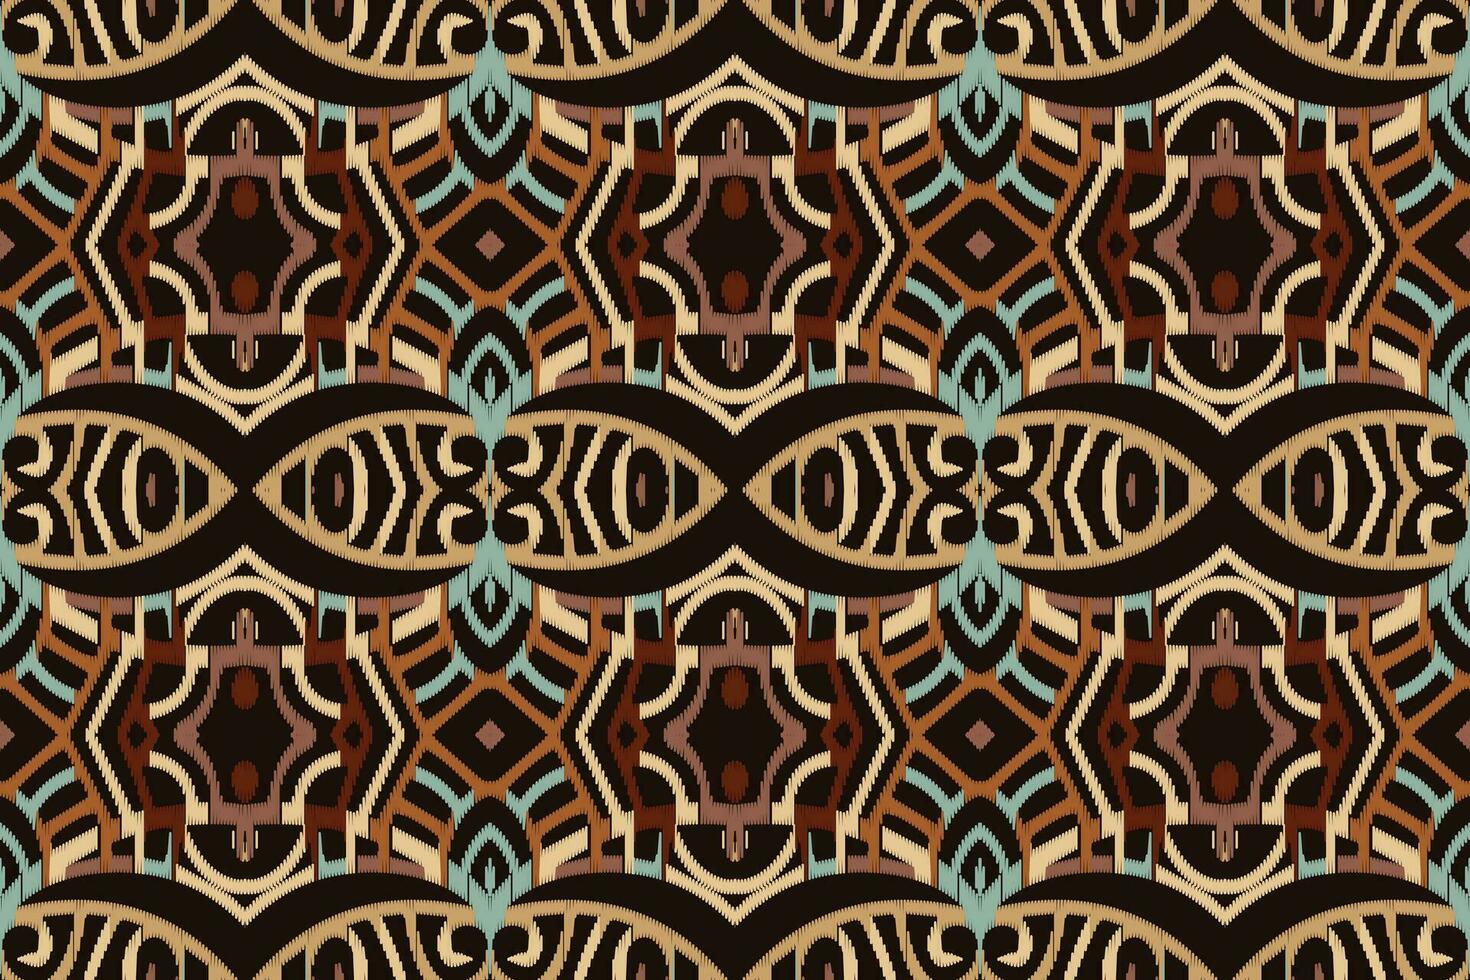 Motiv Ikat Paisley Stickerei Hintergrund. Ikat Chevron geometrisch ethnisch orientalisch Muster traditionell.aztekisch Stil abstrakt Vektor illustration.design zum Textur, Stoff, Kleidung, Verpackung, Sarong.